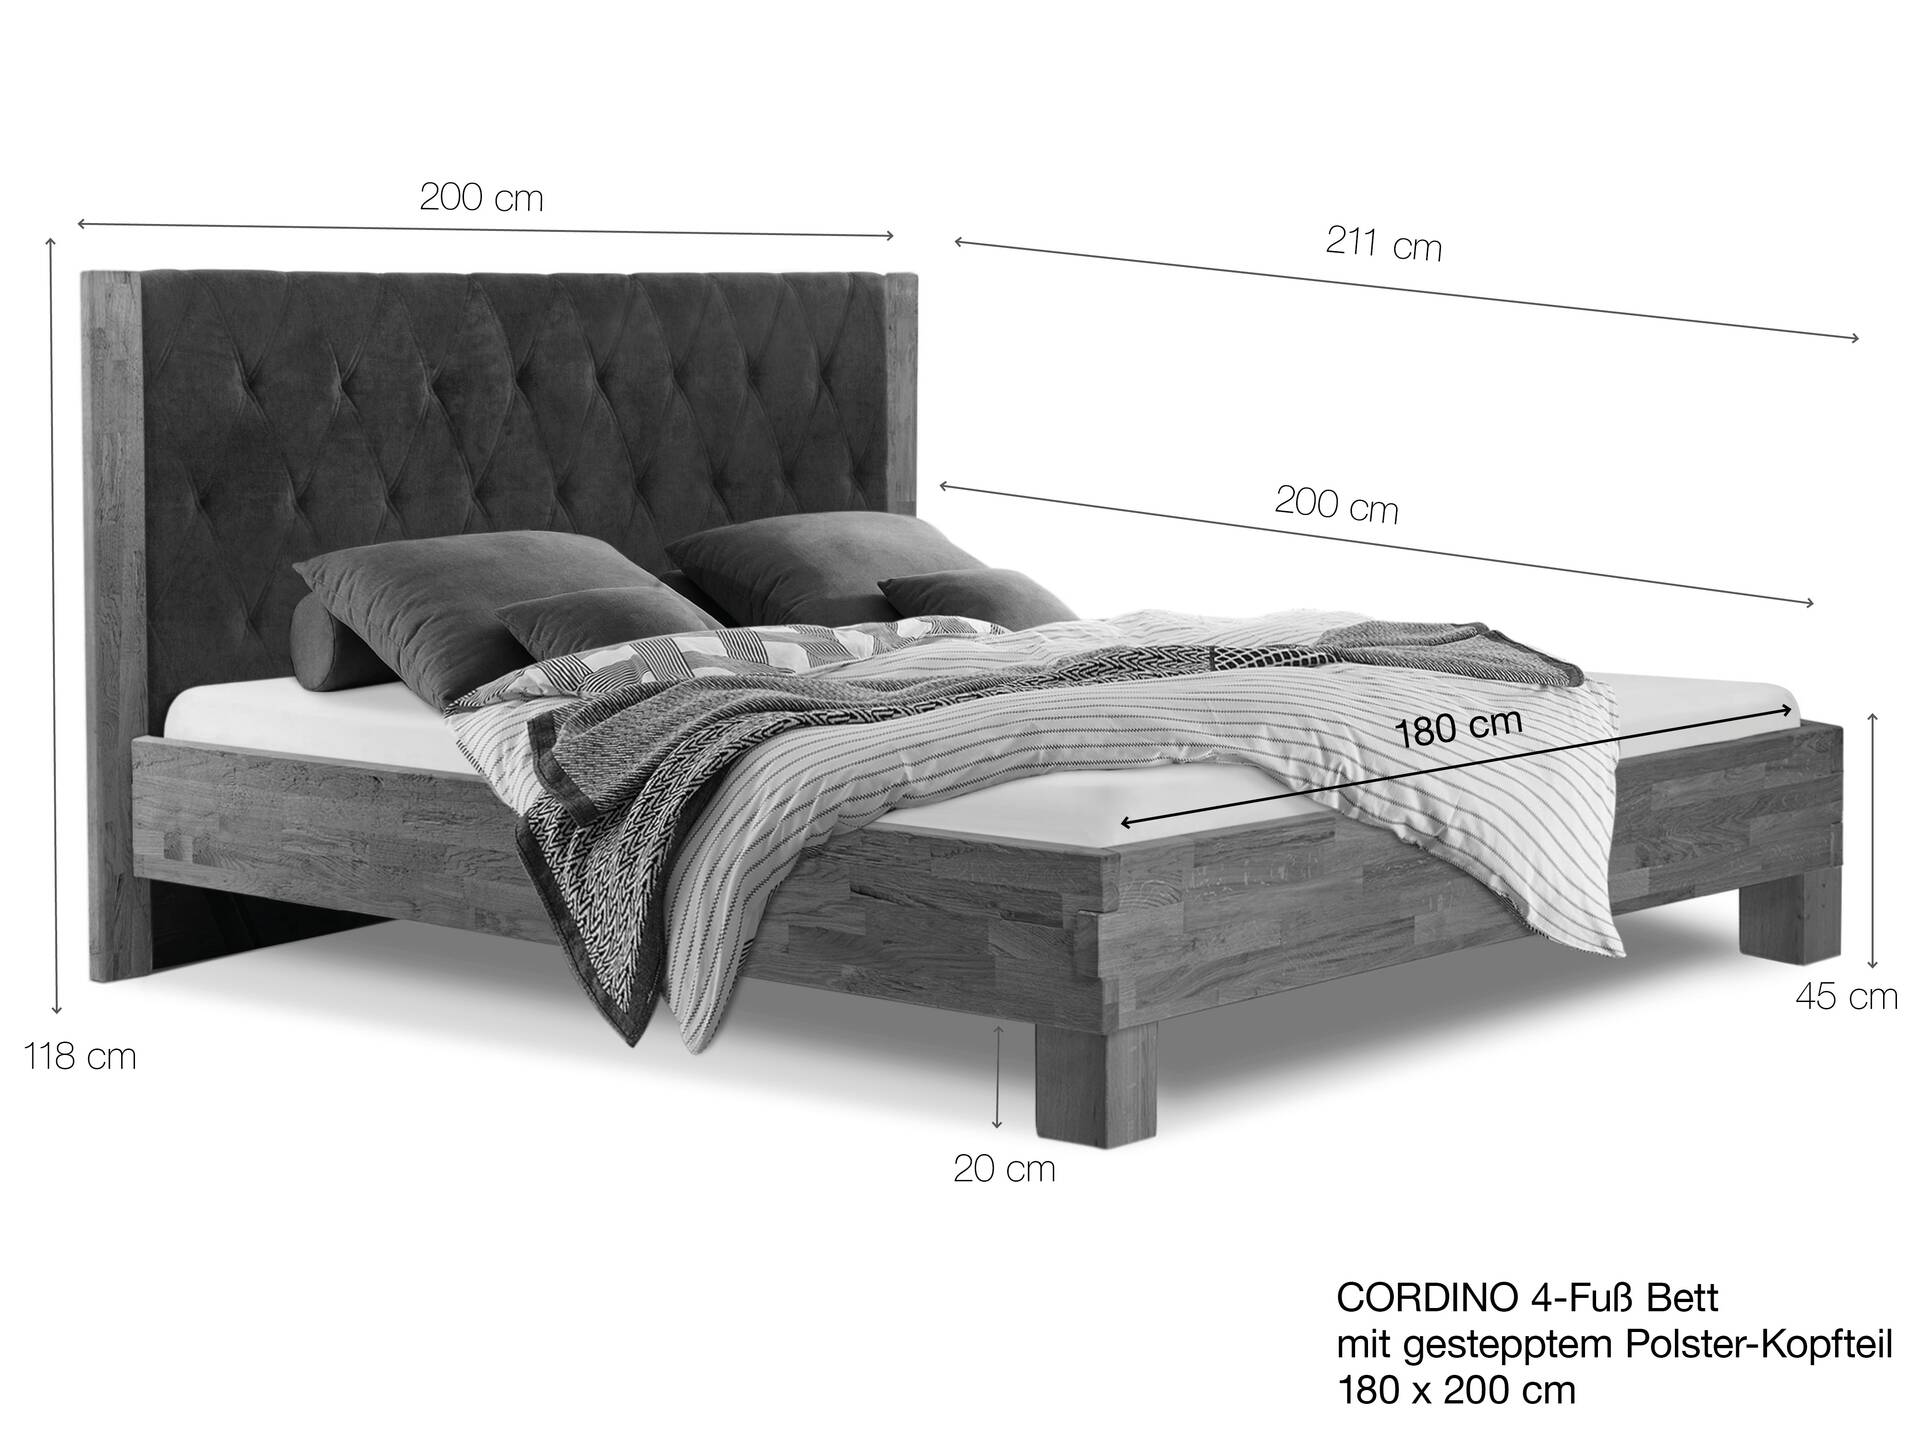 CORDINO 4-Fuß-Bett aus Eiche mit gestepptem Polster-Kopfteil, Material Massivholz 180 x 200 cm | Eiche lackiert | Kunstleder Schwarz | gebürstet